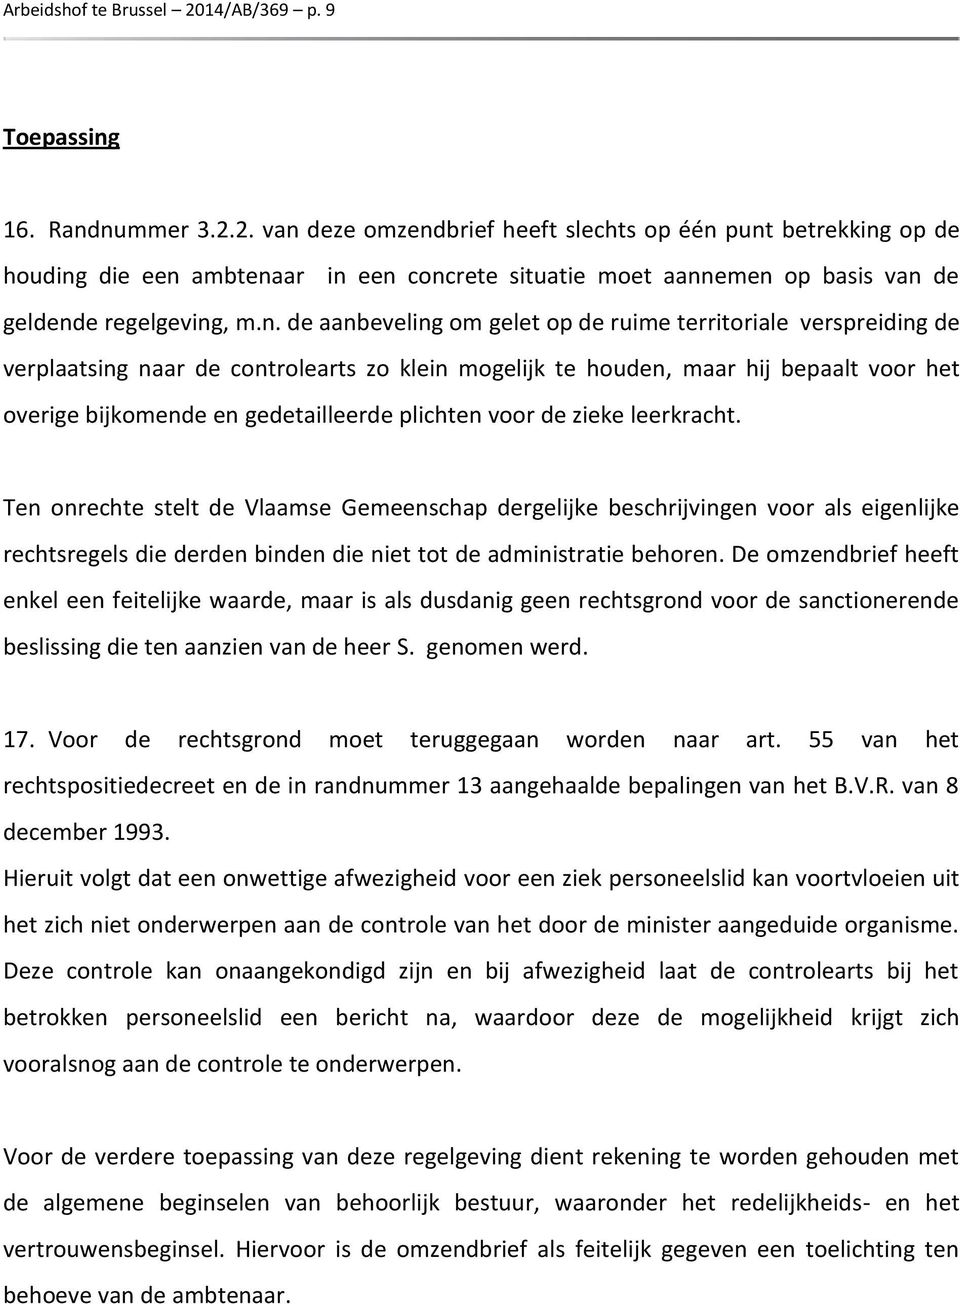 plichten voor de zieke leerkracht. Ten onrechte stelt de Vlaamse Gemeenschap dergelijke beschrijvingen voor als eigenlijke rechtsregels die derden binden die niet tot de administratie behoren.